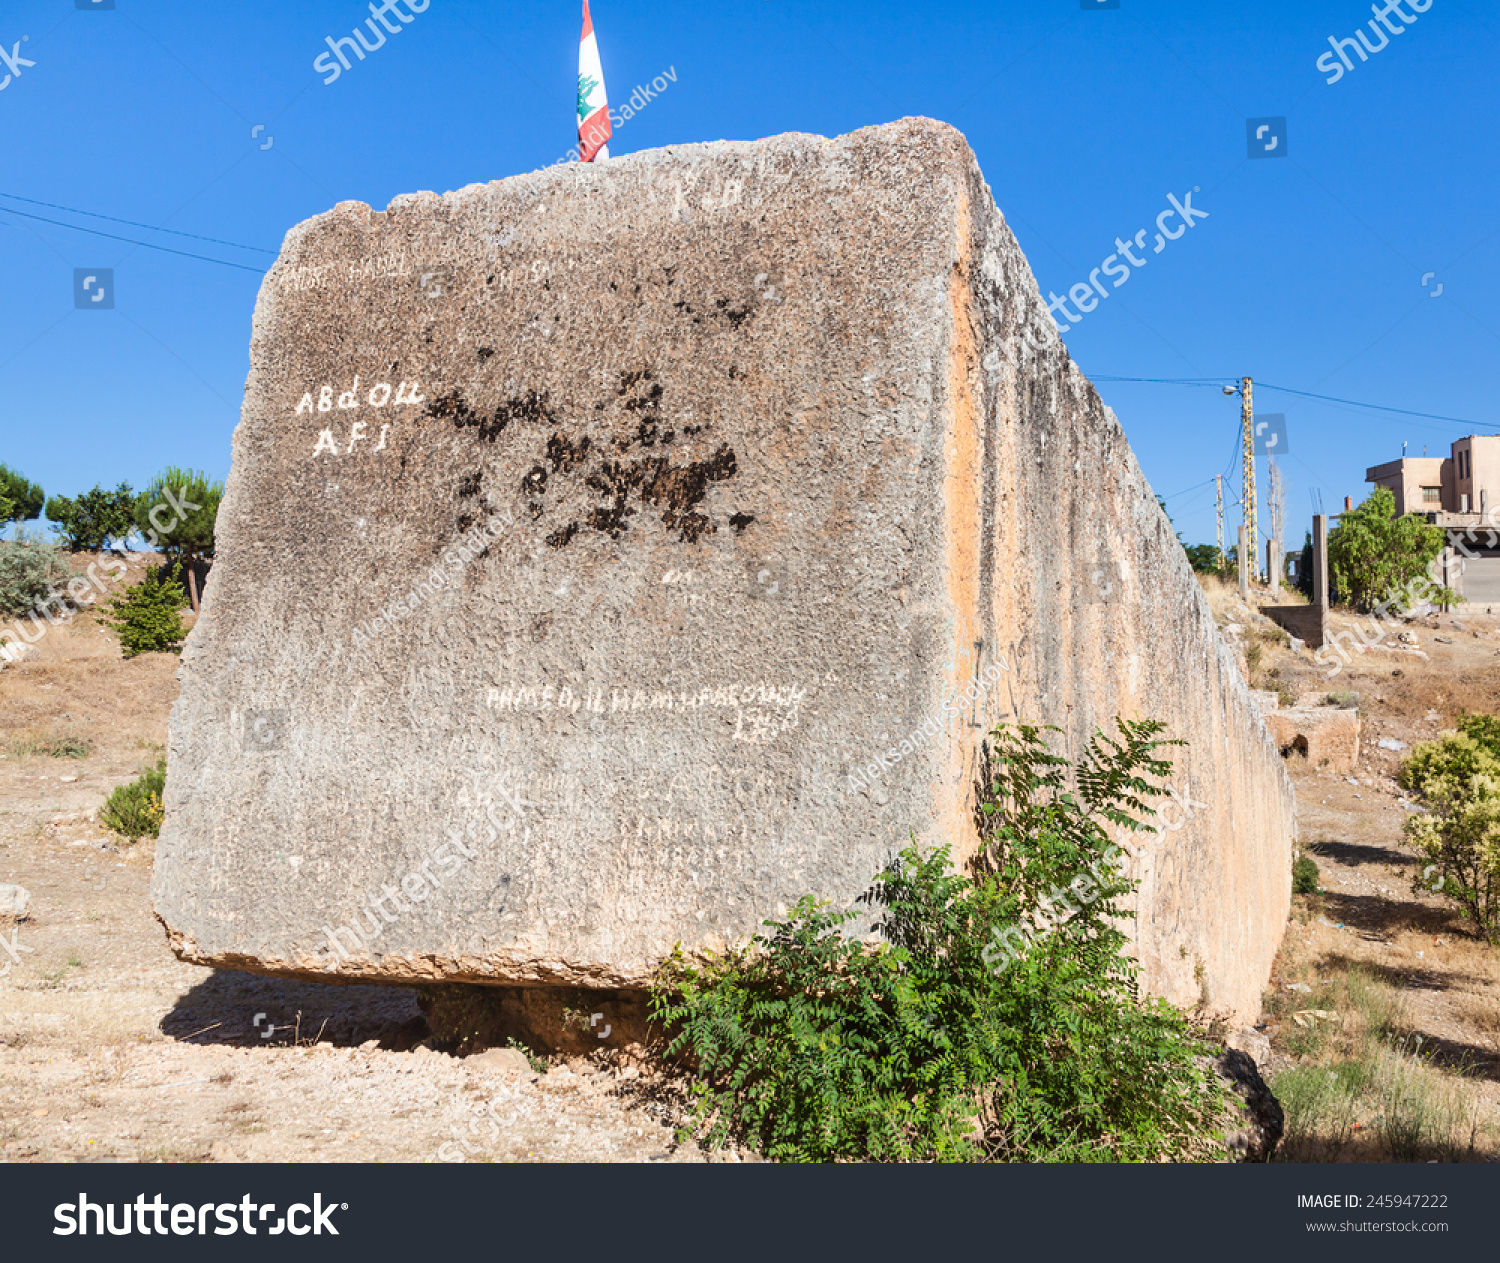 世界上最大的石头Baalbeck(古代太阳神)、黎巴